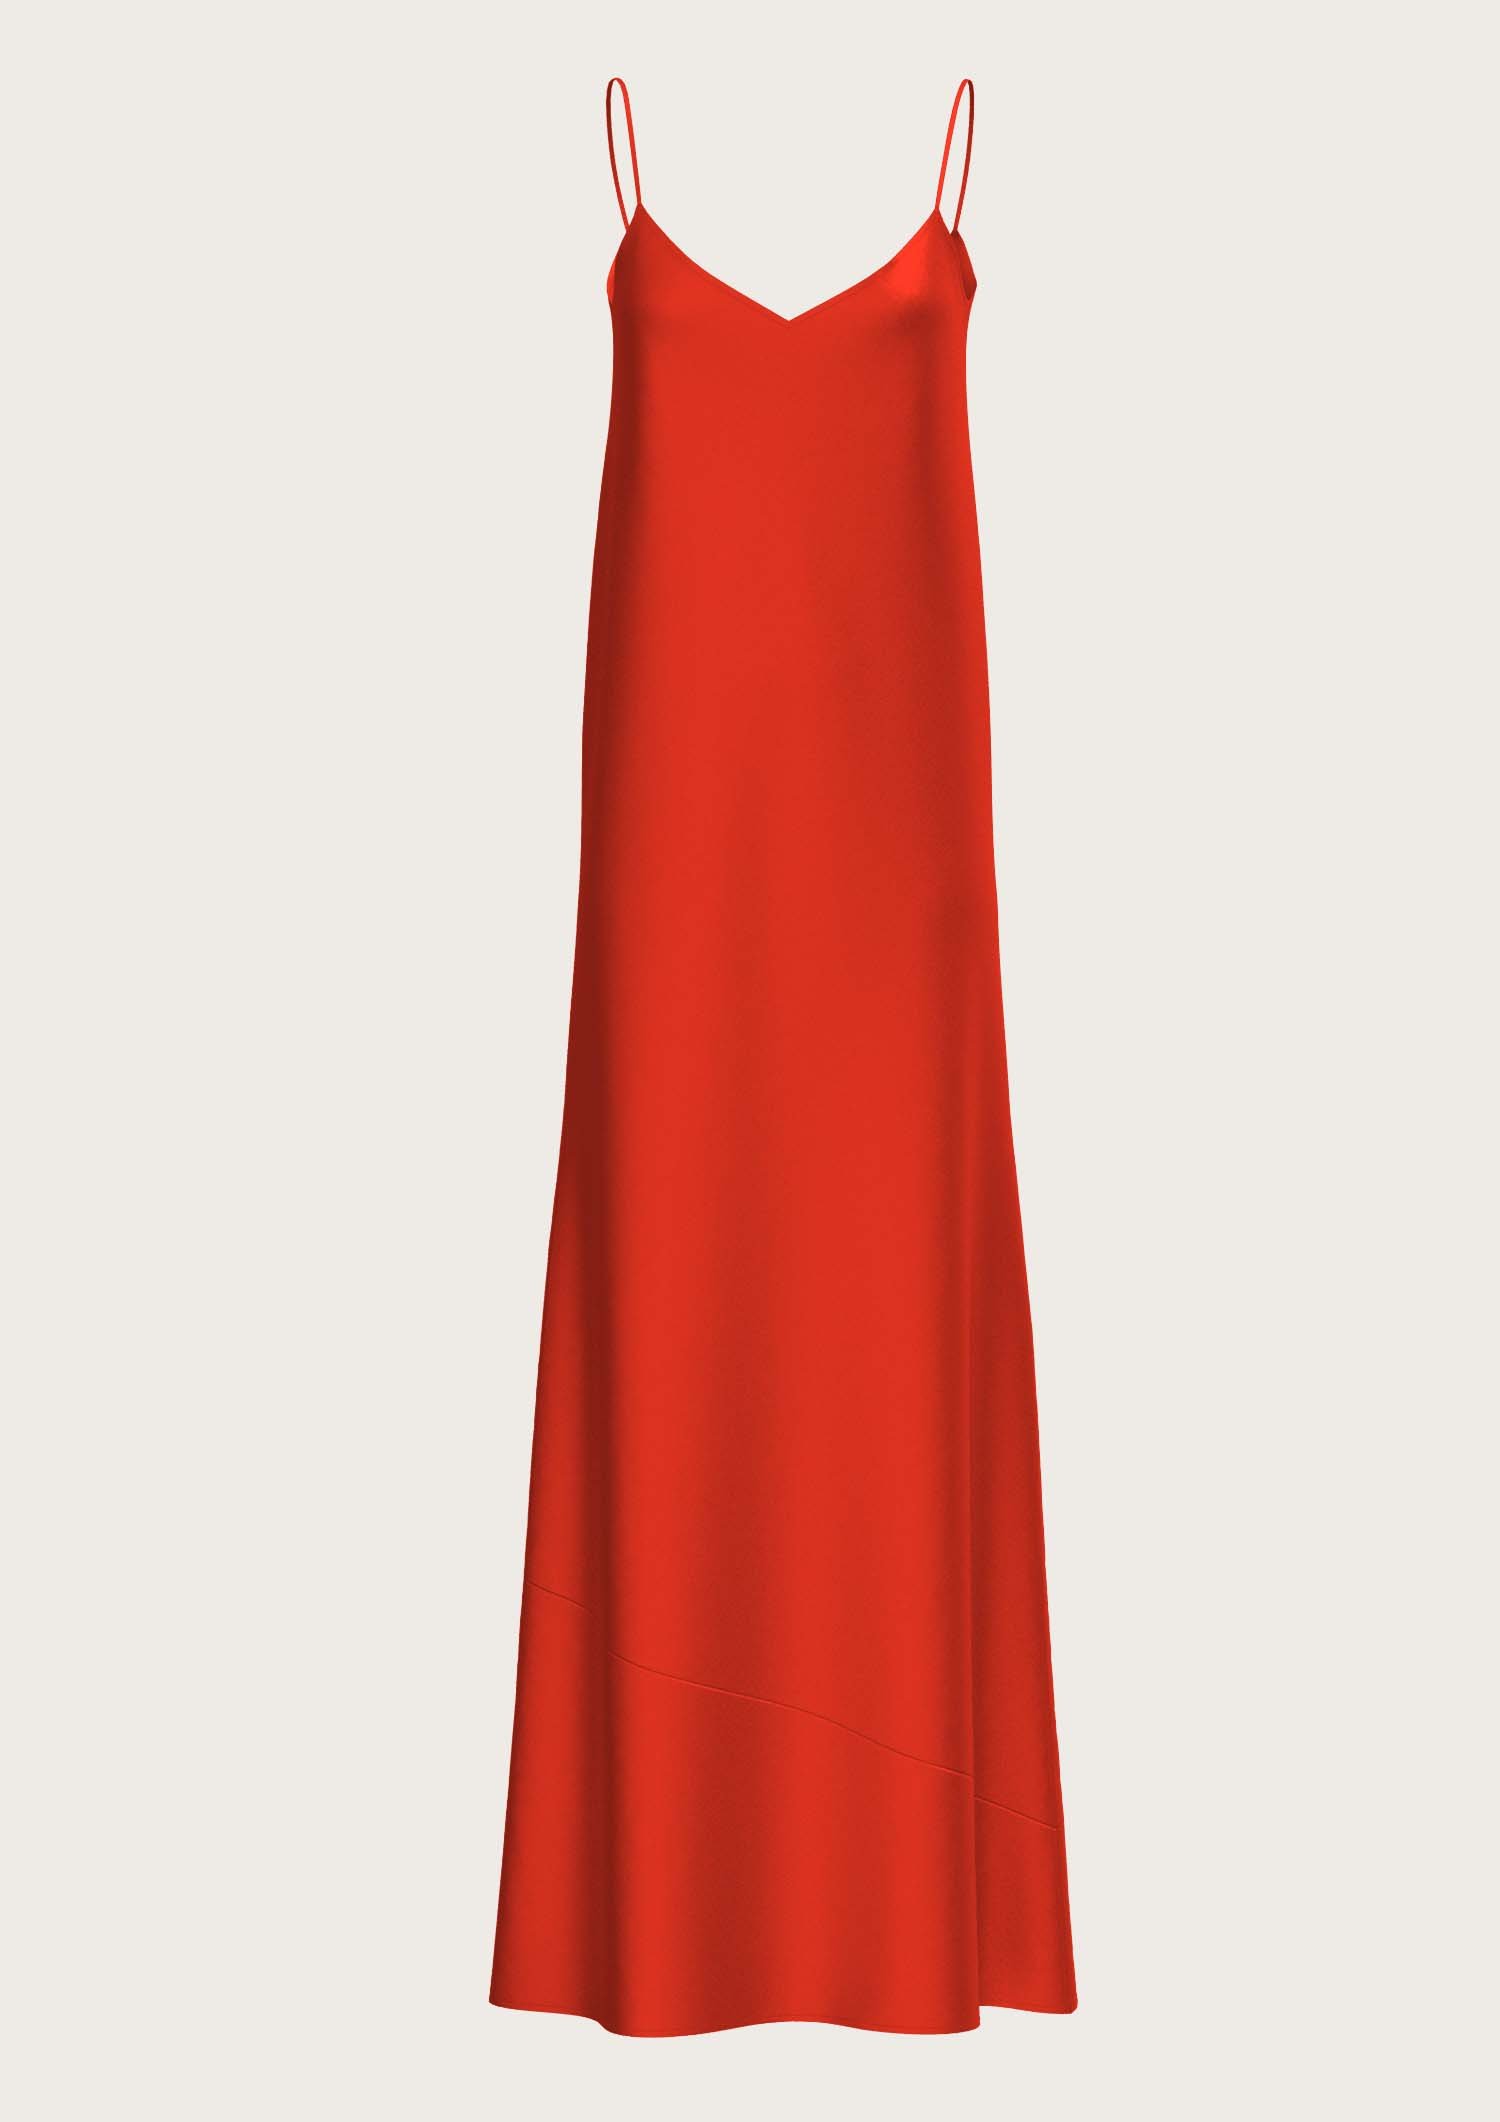 Silk Long Slip Dress Antoine in Red (Kopie) (Kopie) (Kopie)